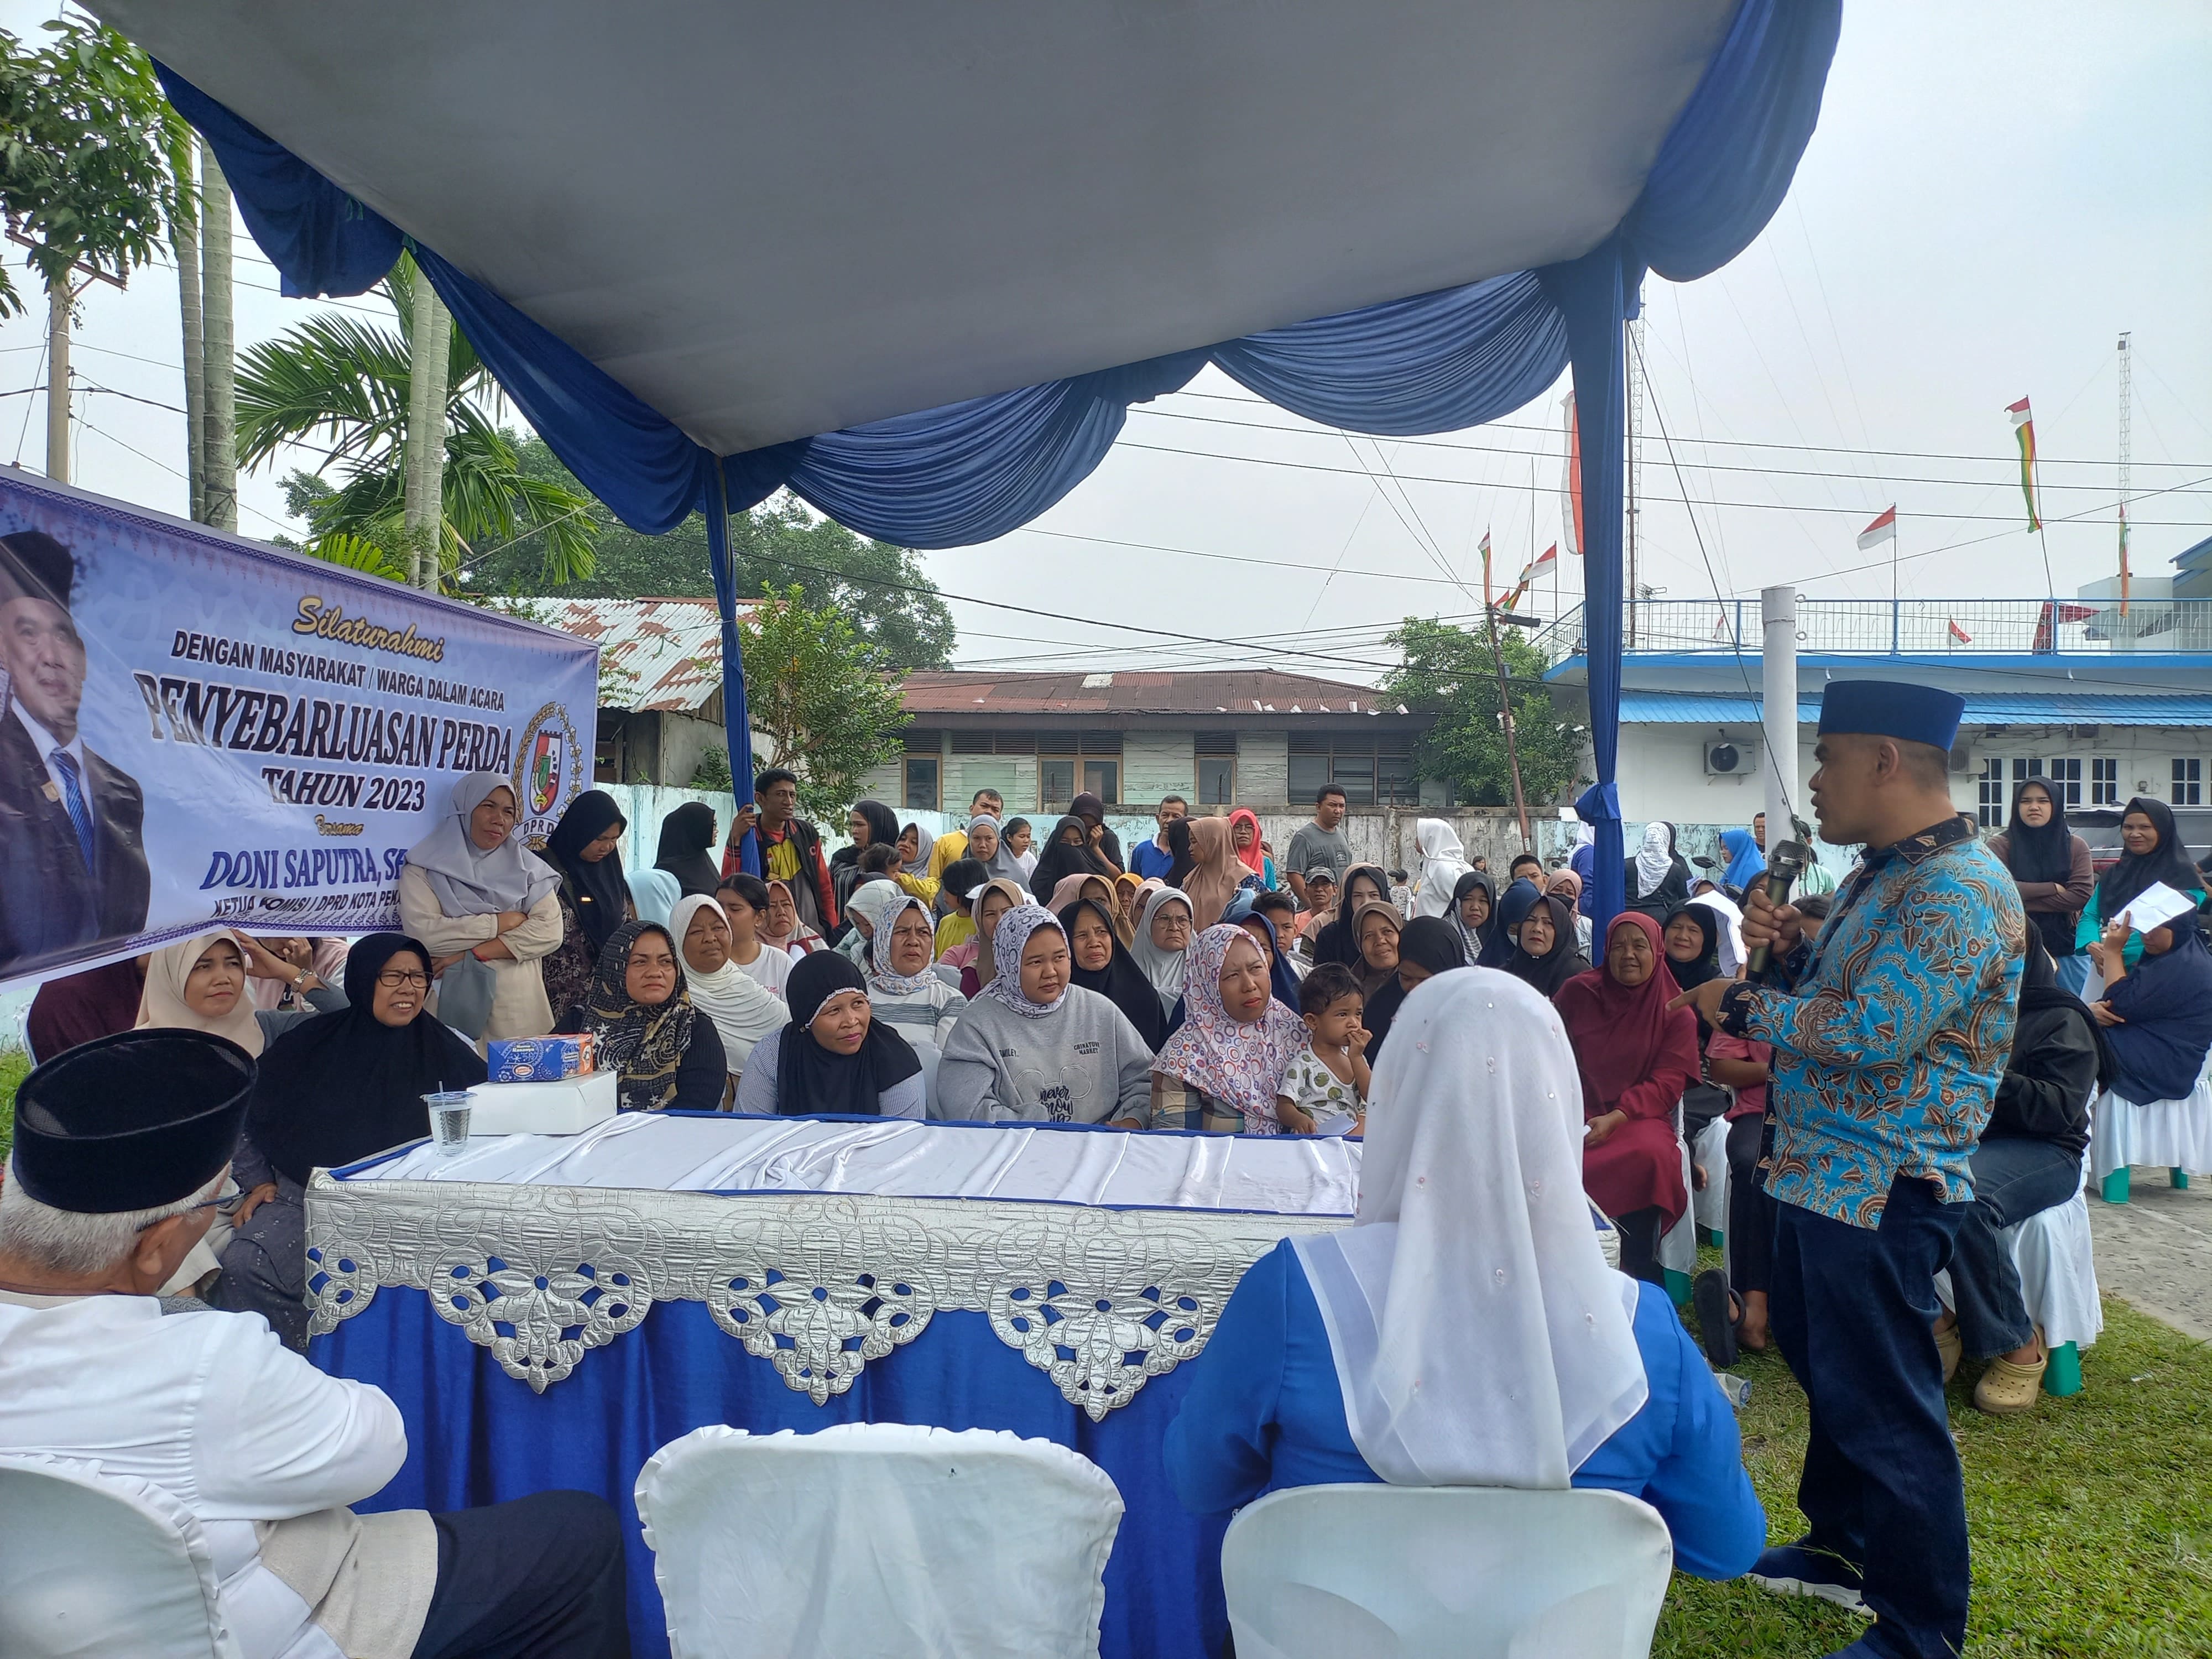 Masyarakat yang antusias mendengarkan sosialisasi Perda dari Anggota DPRD Kota Pekanbaru Doni Saputra MH